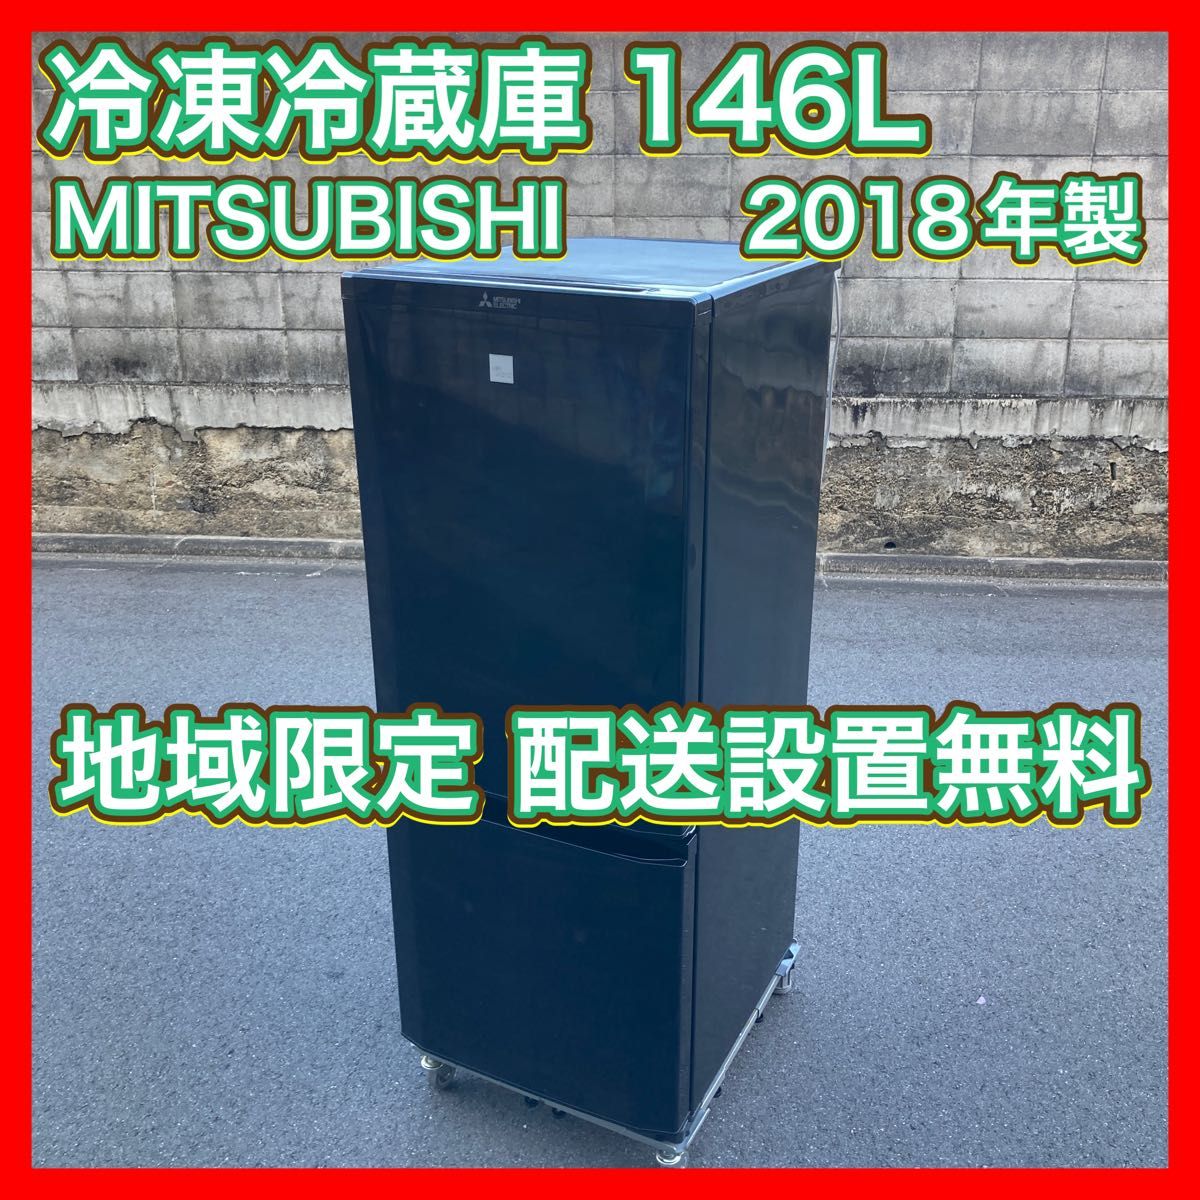 新品同様 三菱146L 2ドア 冷凍冷蔵庫 MITSUBISHIノンフロンMR-P15W-S